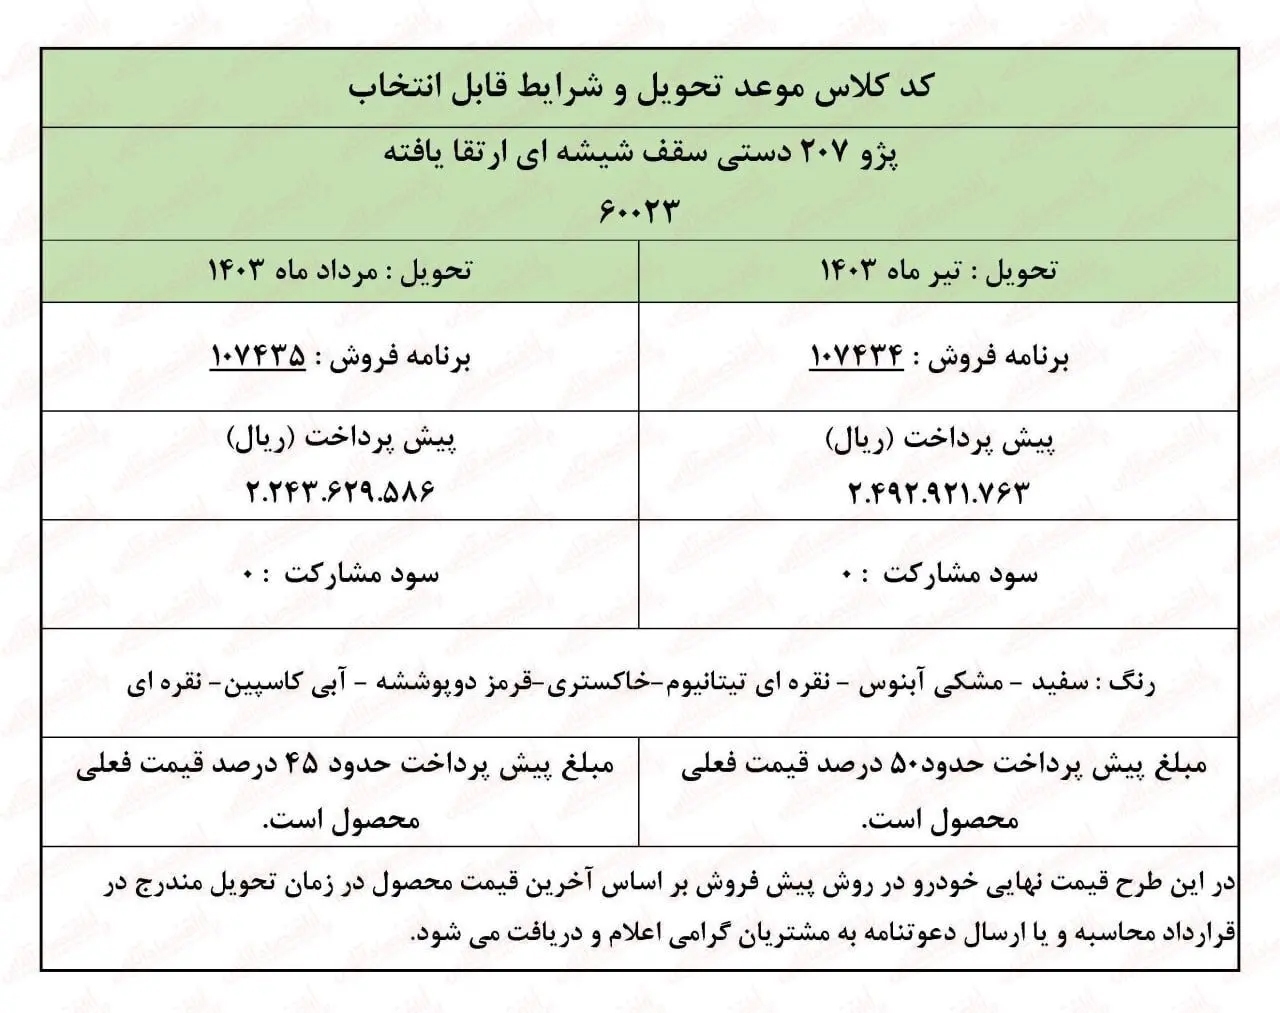 شرایط فروش اقساطی ایران خودرو اعلام شد+ جزئیات